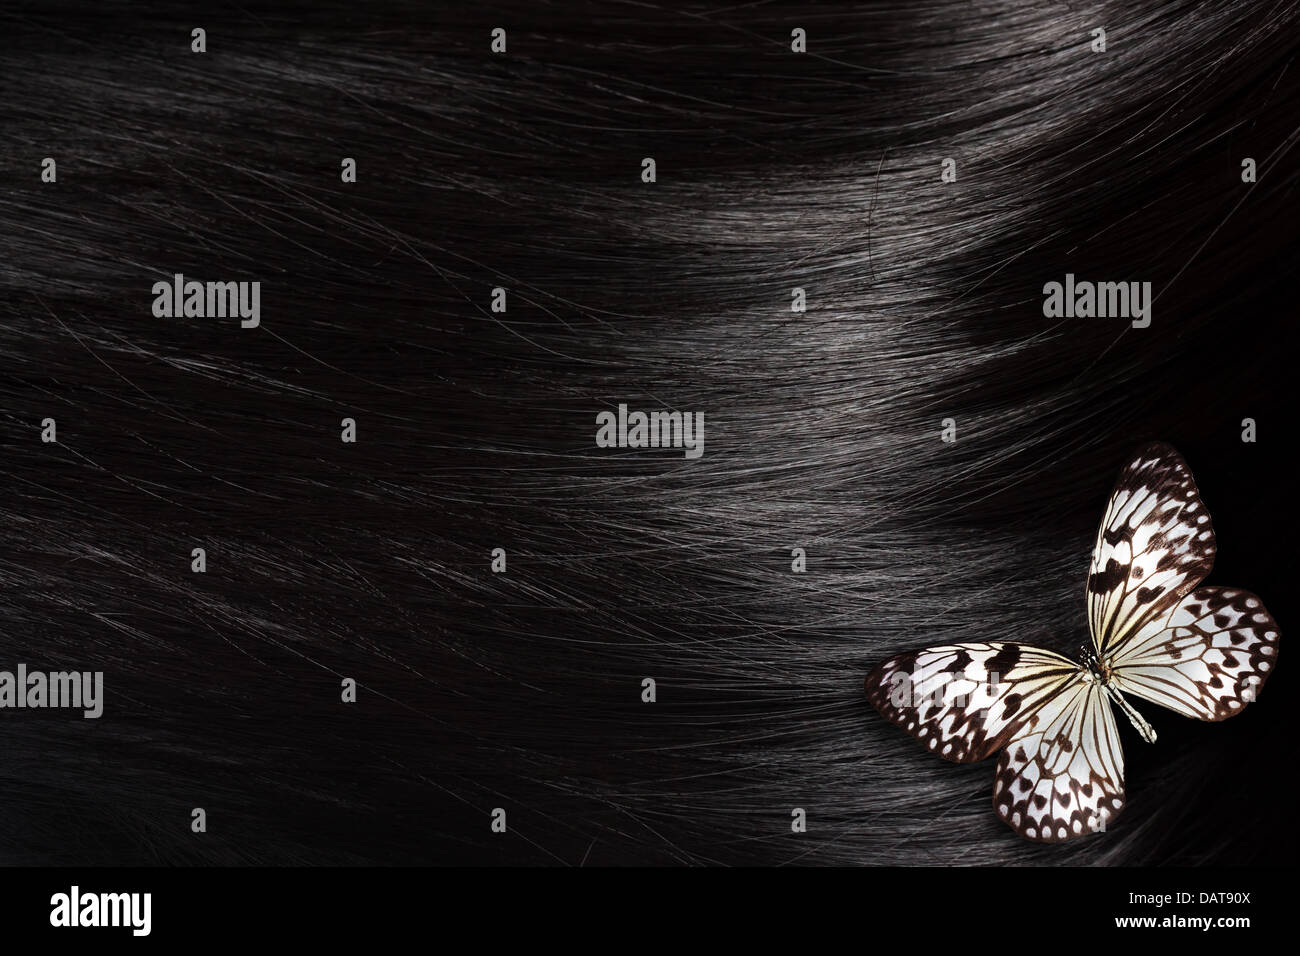 Gesundes schwarzes Haar mit einem Papier-Drachen Schmetterling - Nahaufnahme Bild Stockfoto